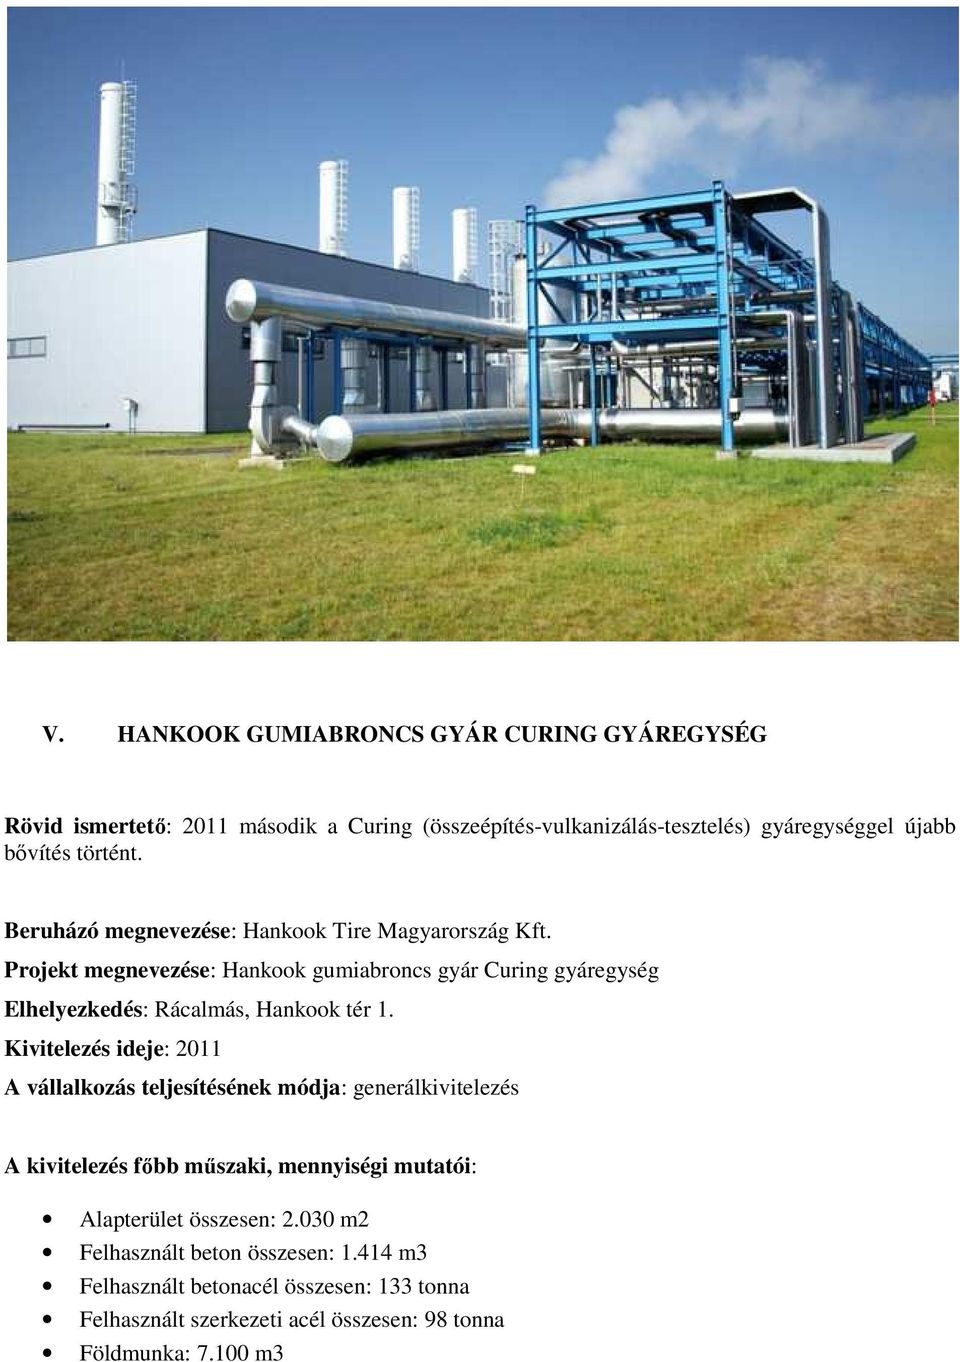 Projekt megnevezése: Hankook gumiabroncs gyár Curing gyáregység Kivitelezés ideje: 2011 Alapterület